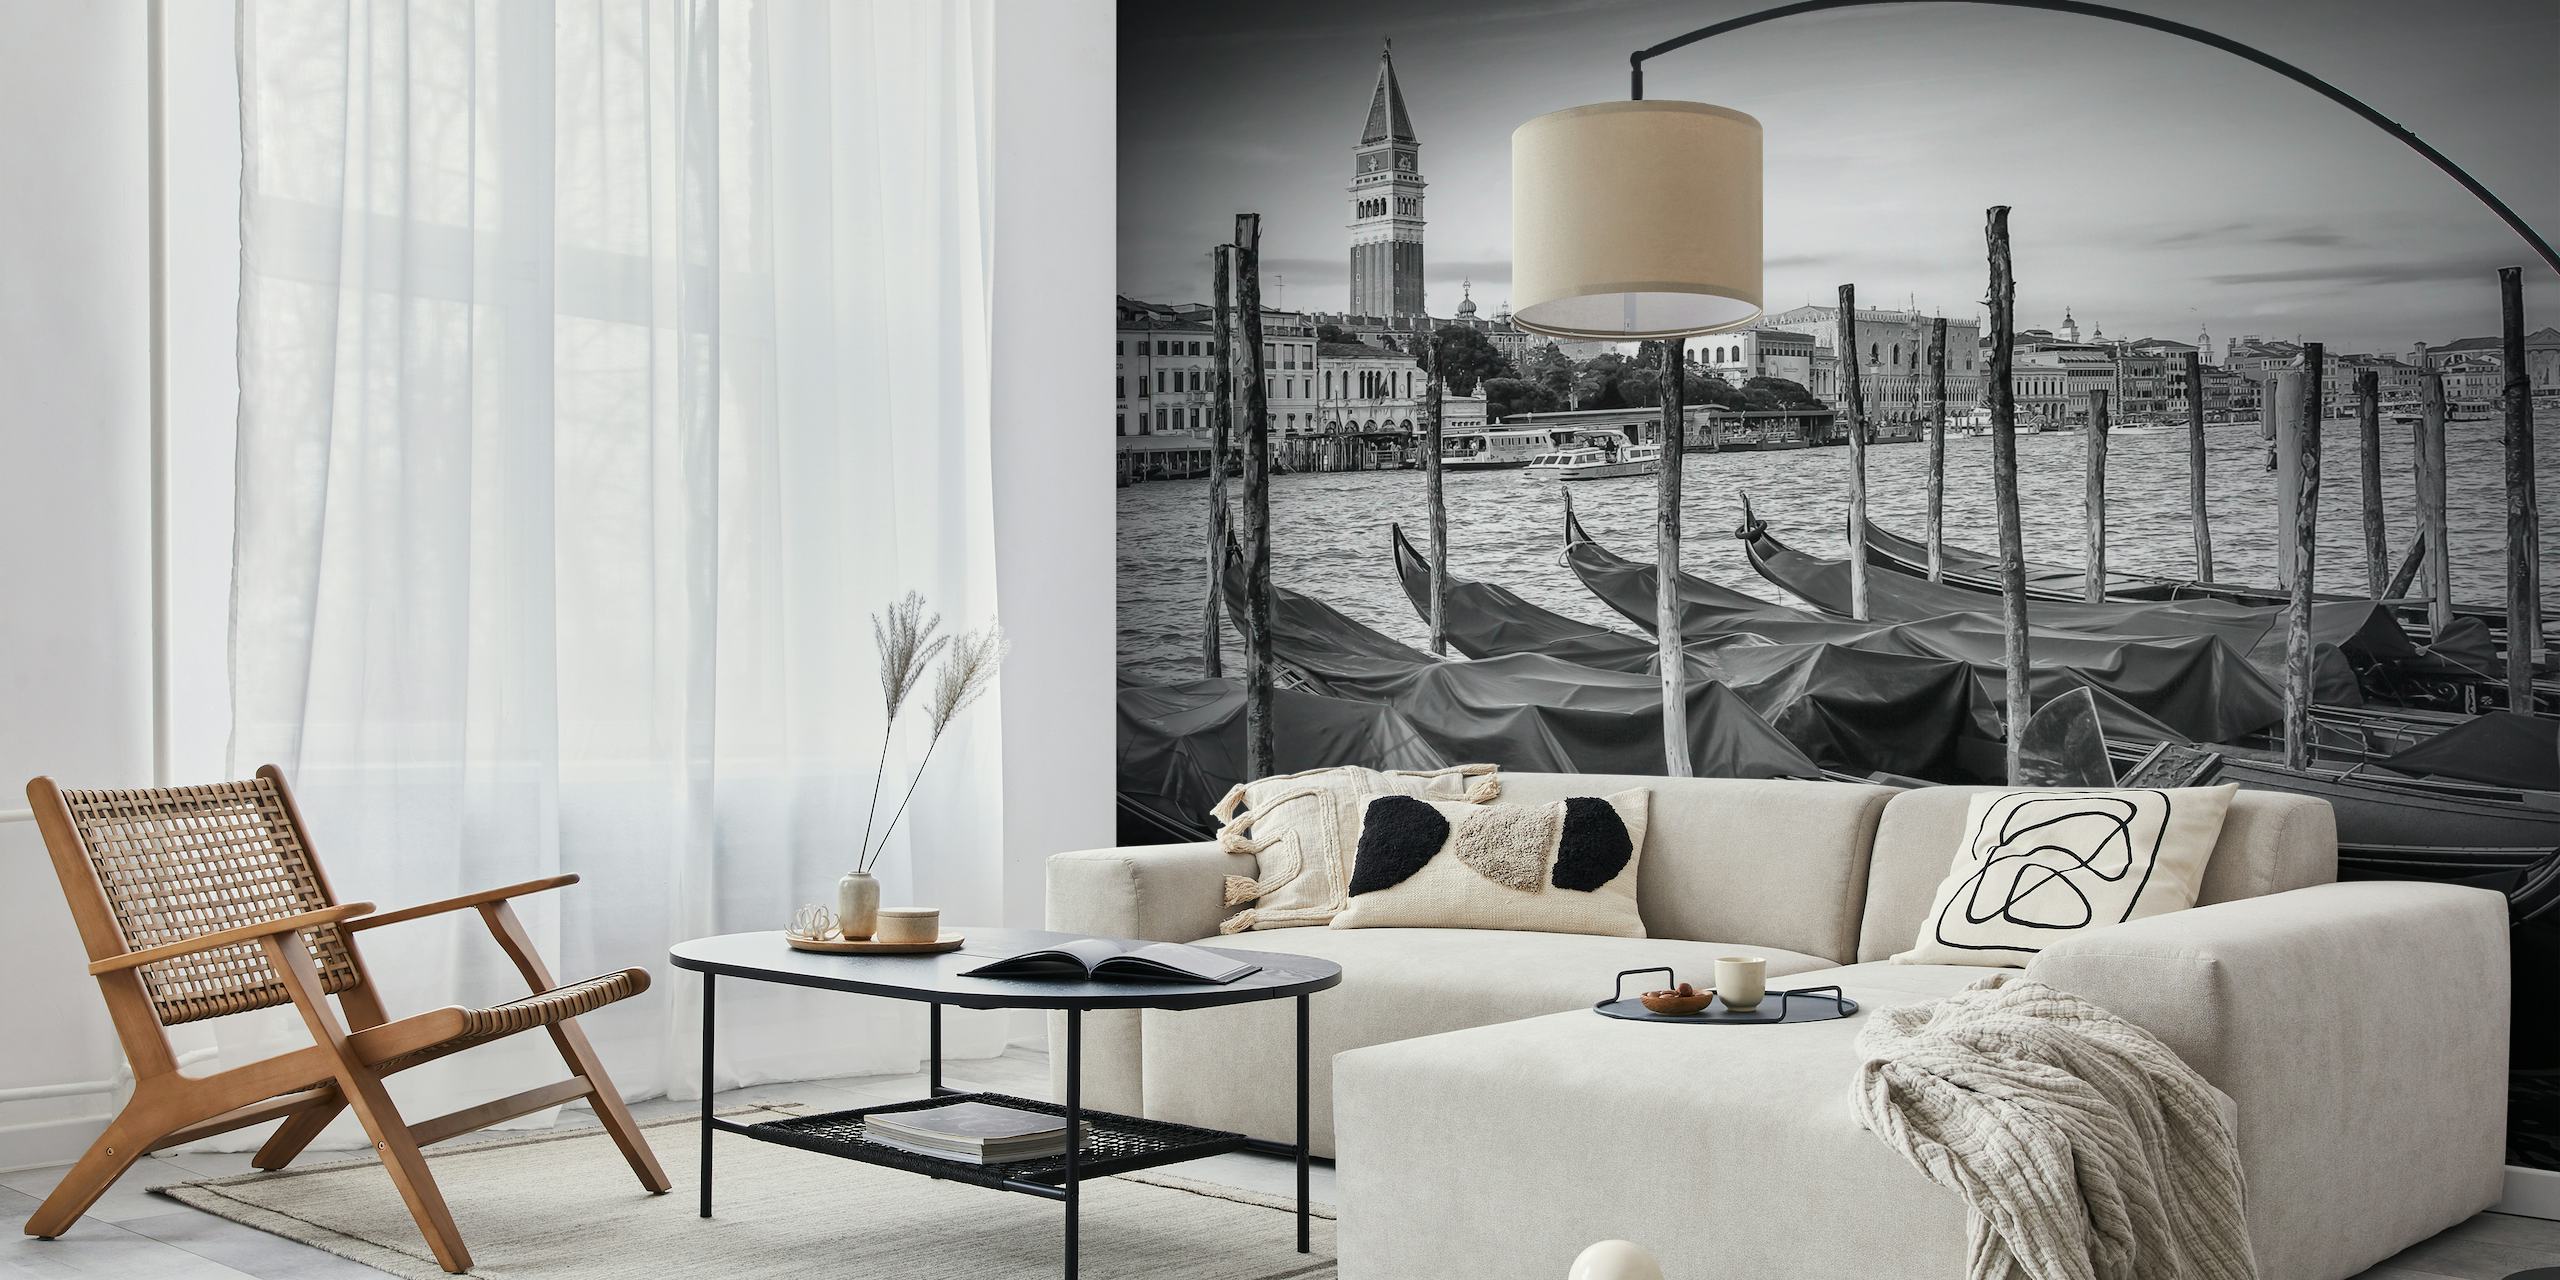 Černobílá nástěnná malba benátského Grand Canal s gondolami a historickou architekturou